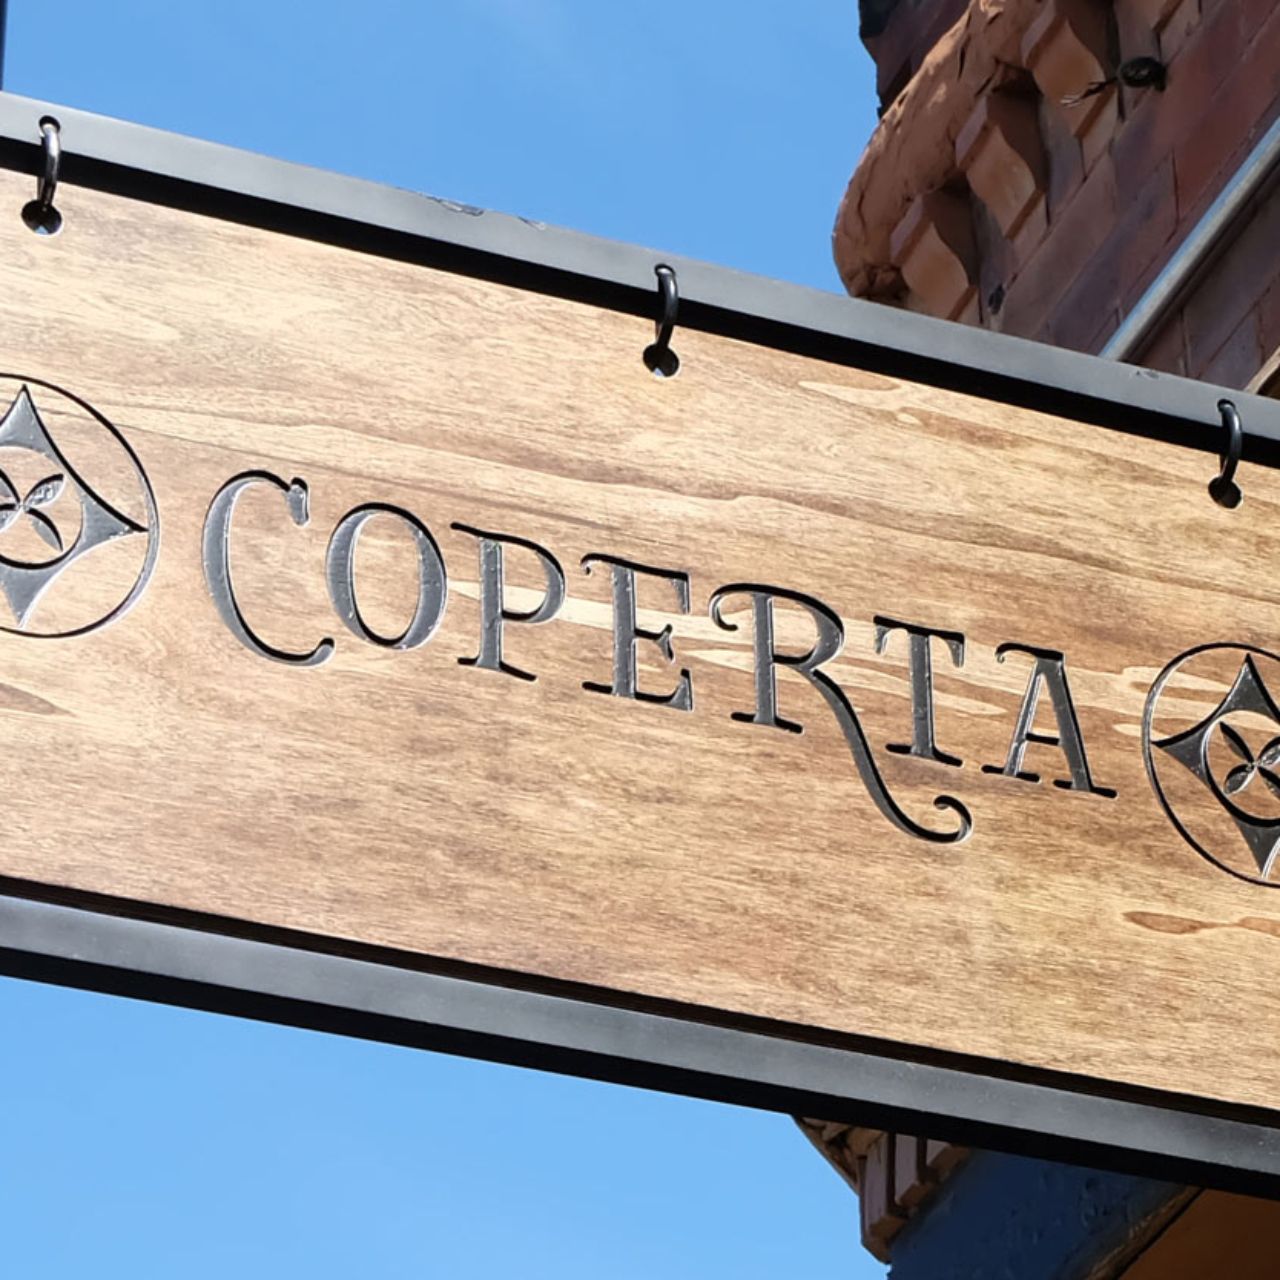 Coperta Restaurant Denver Co Opentable